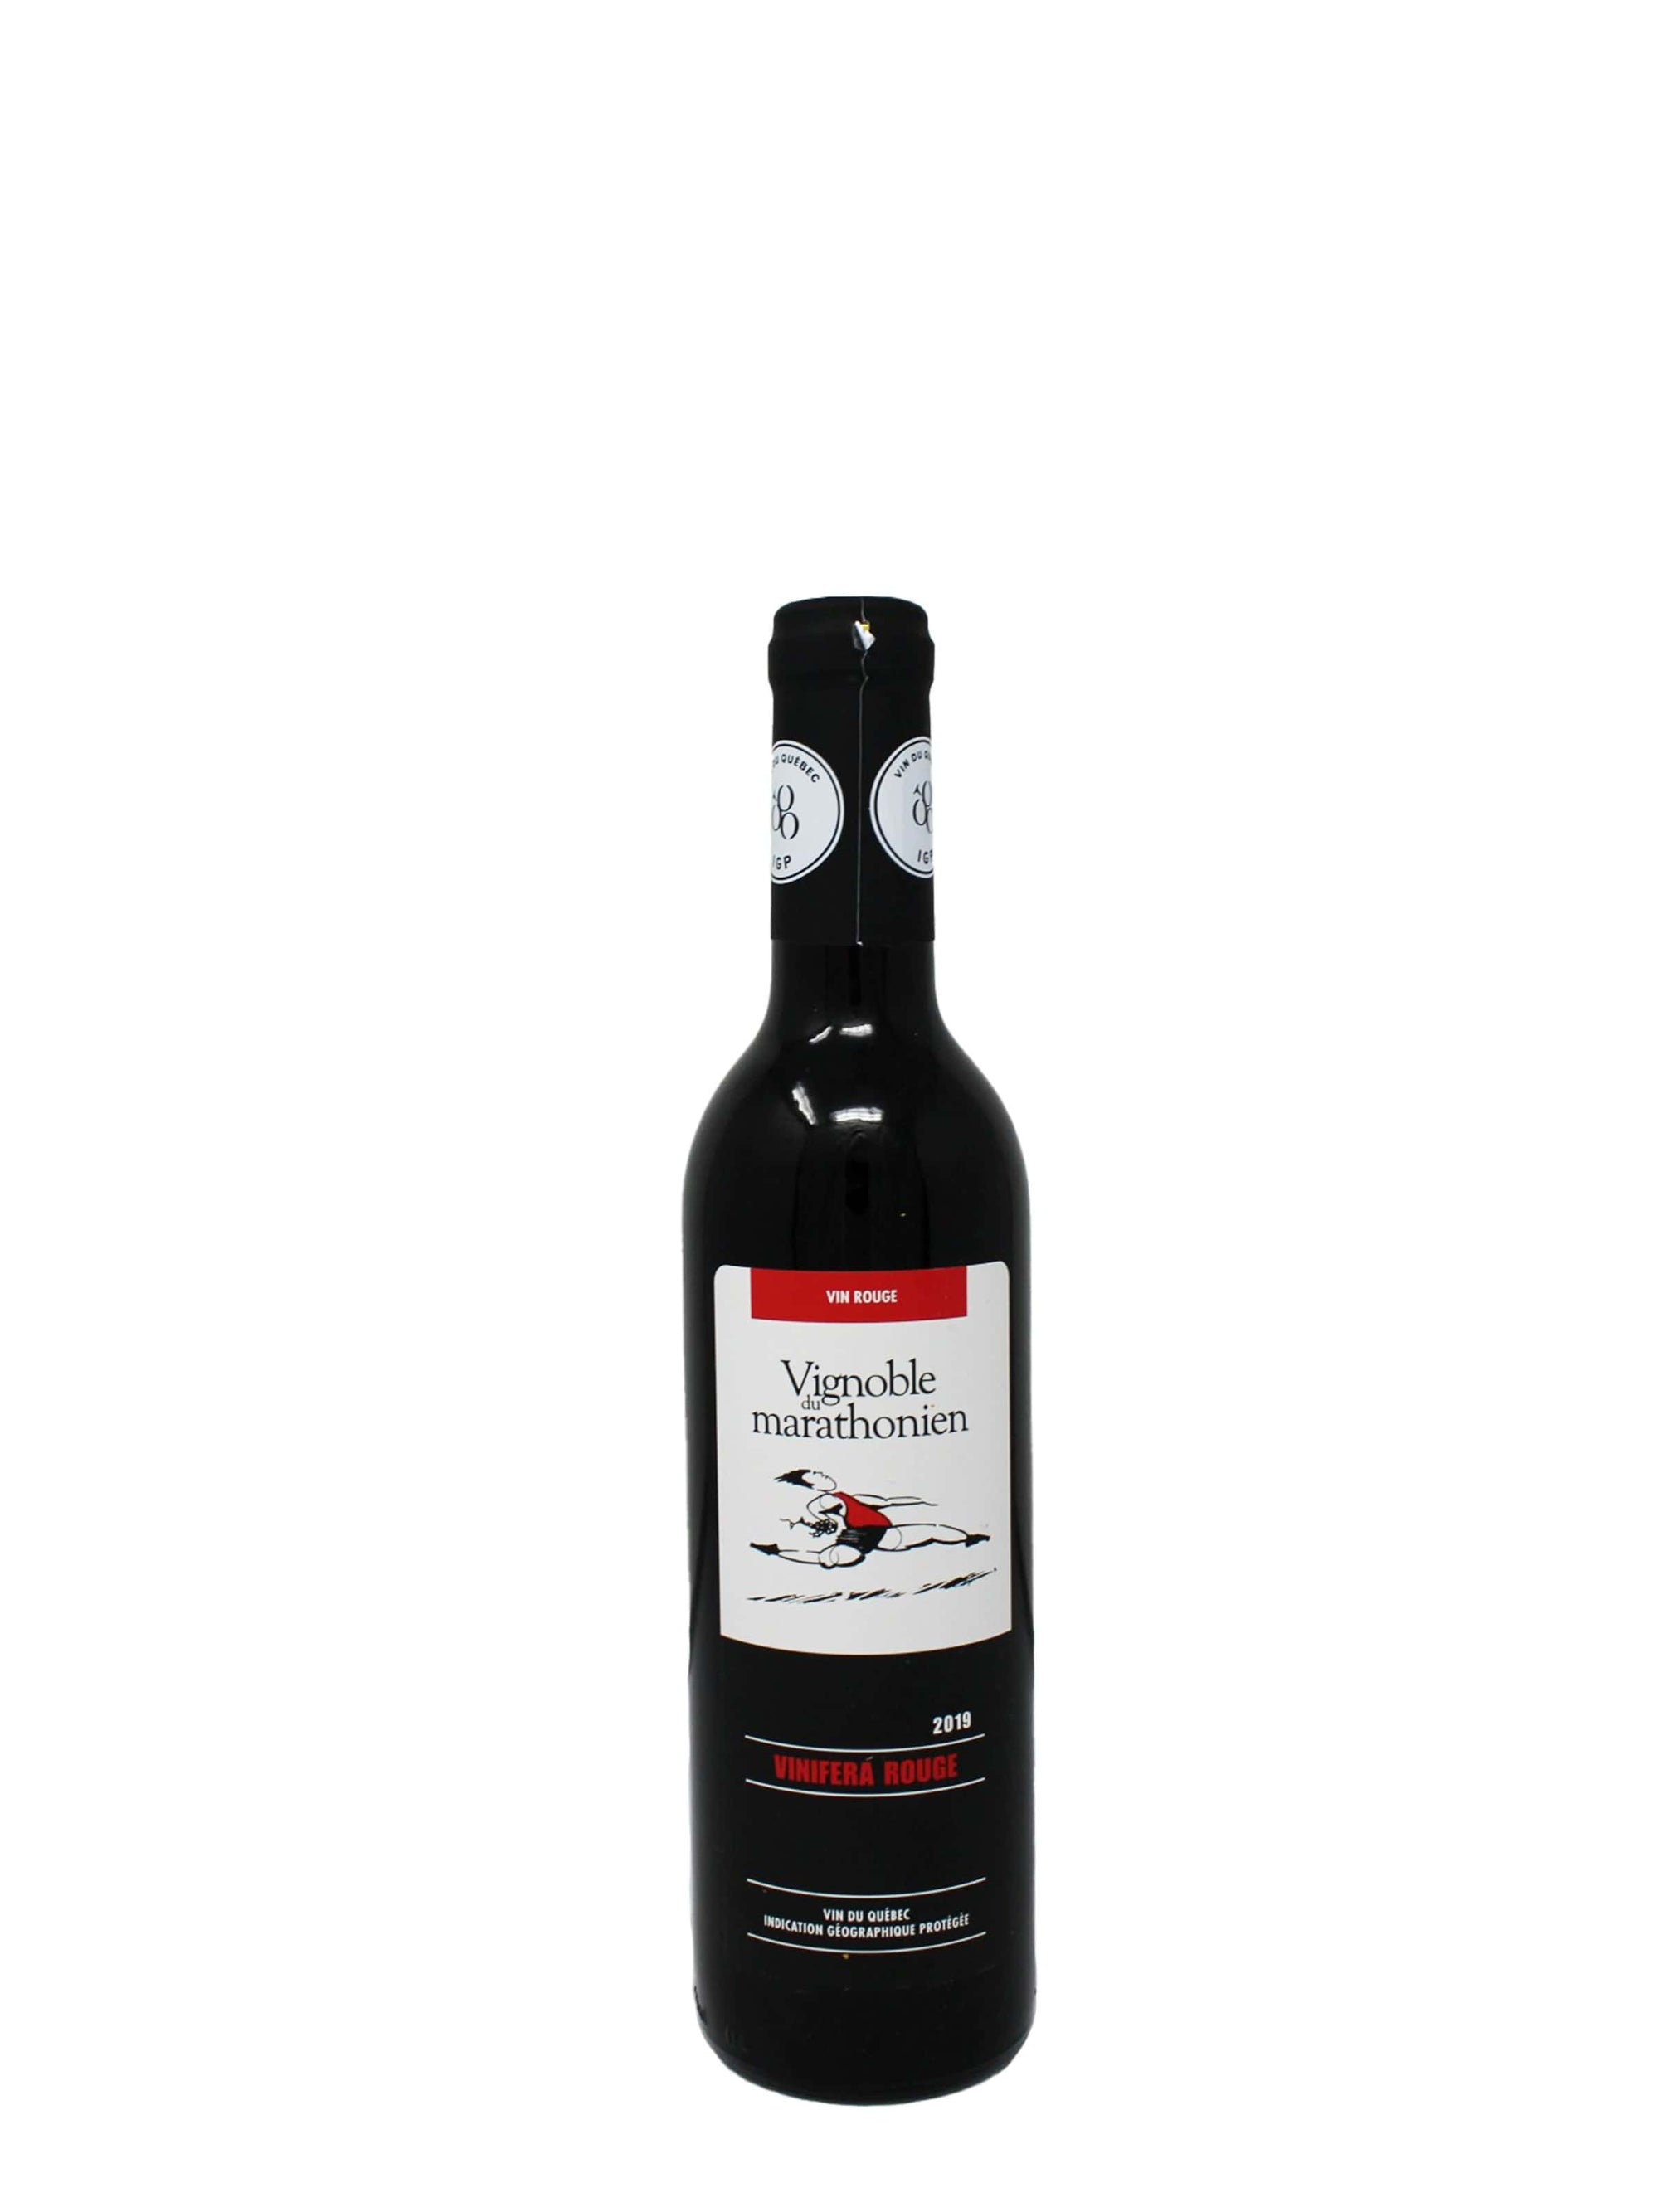 Vignoble du Marathonien Vinifera rouge - Vin rouge du Vignoble du Marathonien (375 ml)